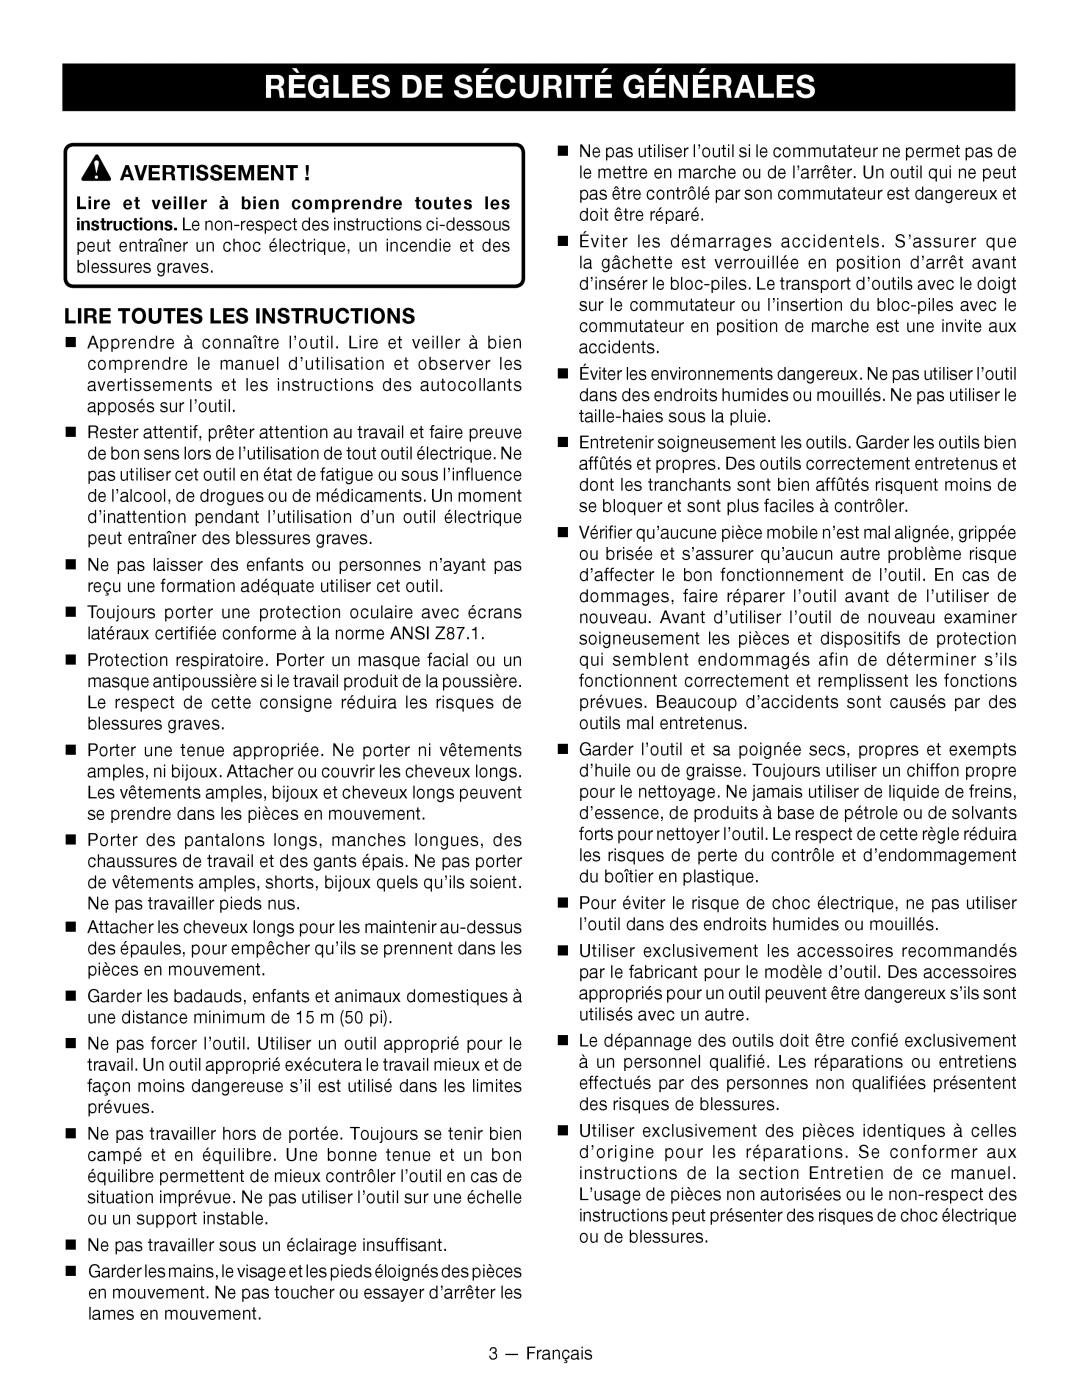 Ryobi P2605 manuel dutilisation Règles De Sécurité Générales, Avertissement , Lire Toutes Les Instructions 